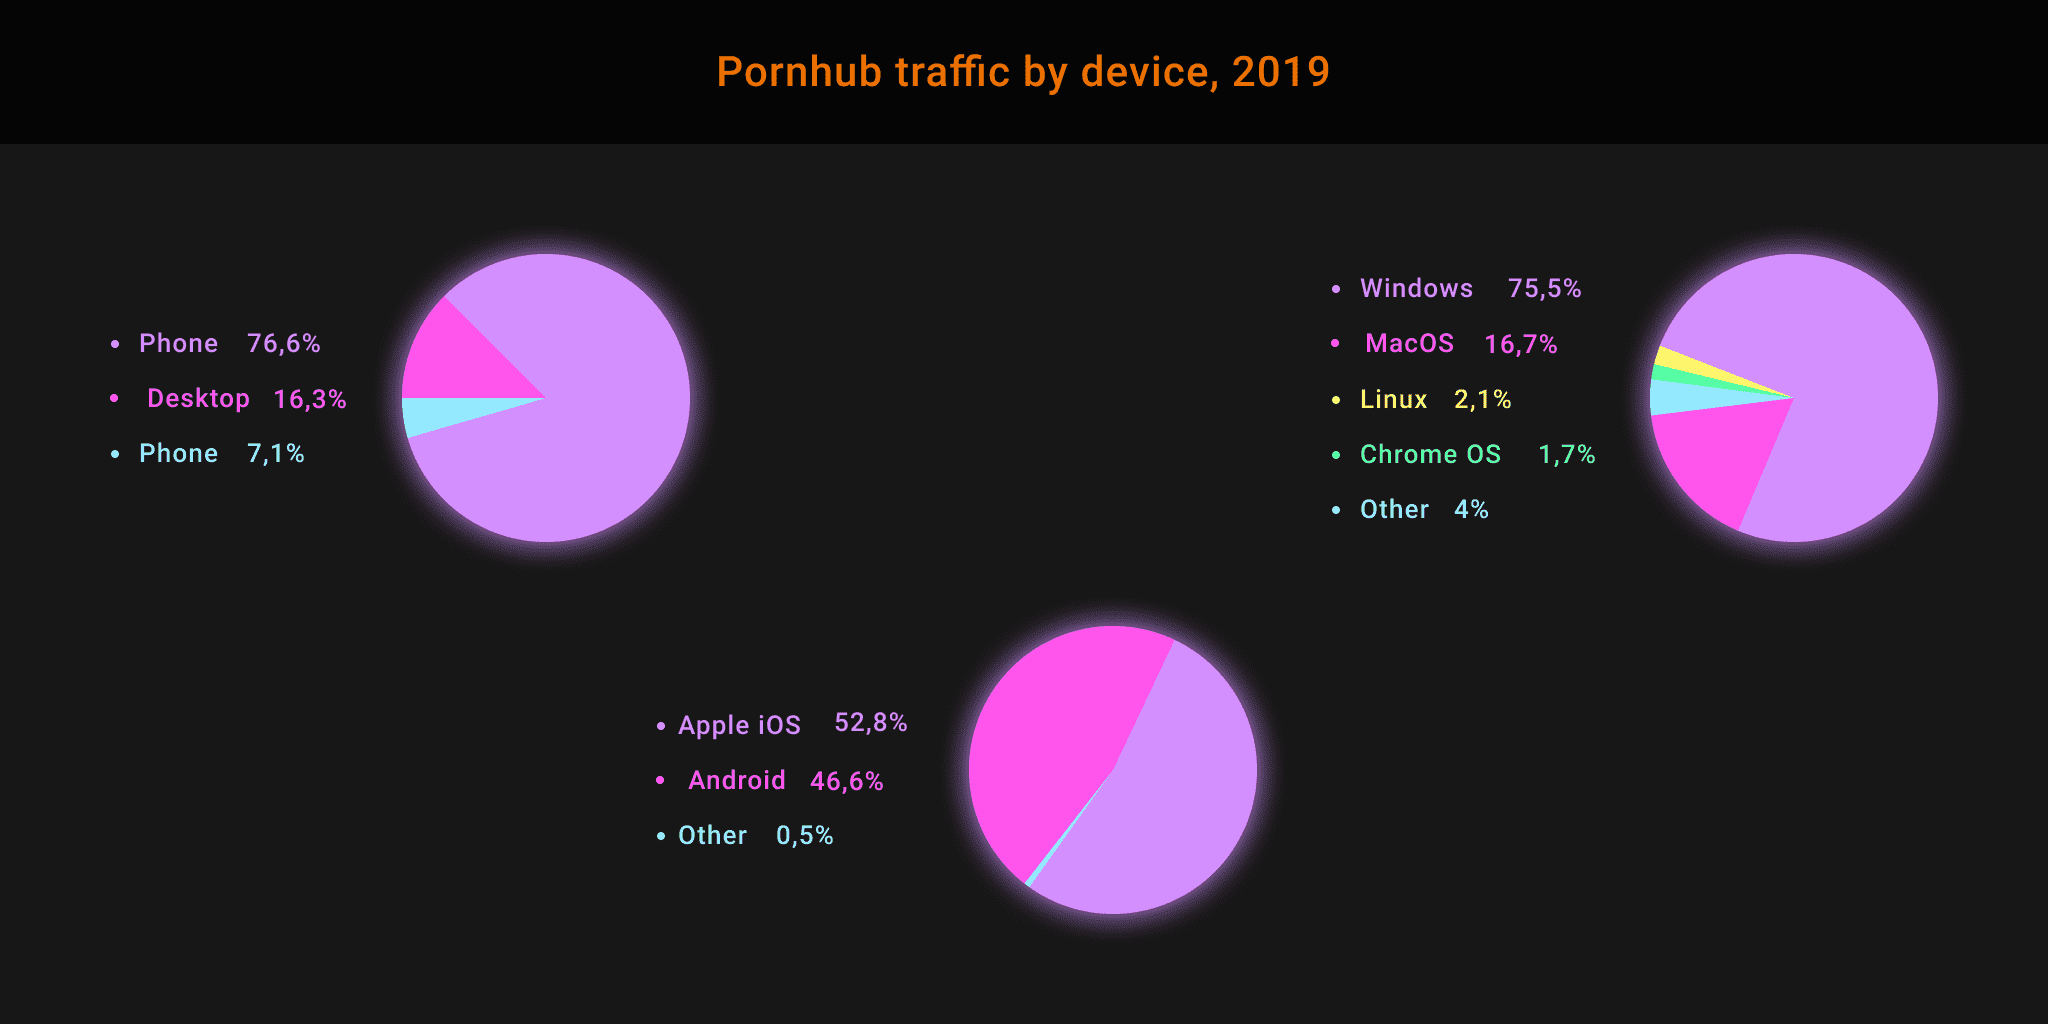 Pornhub traffic by device, 2019